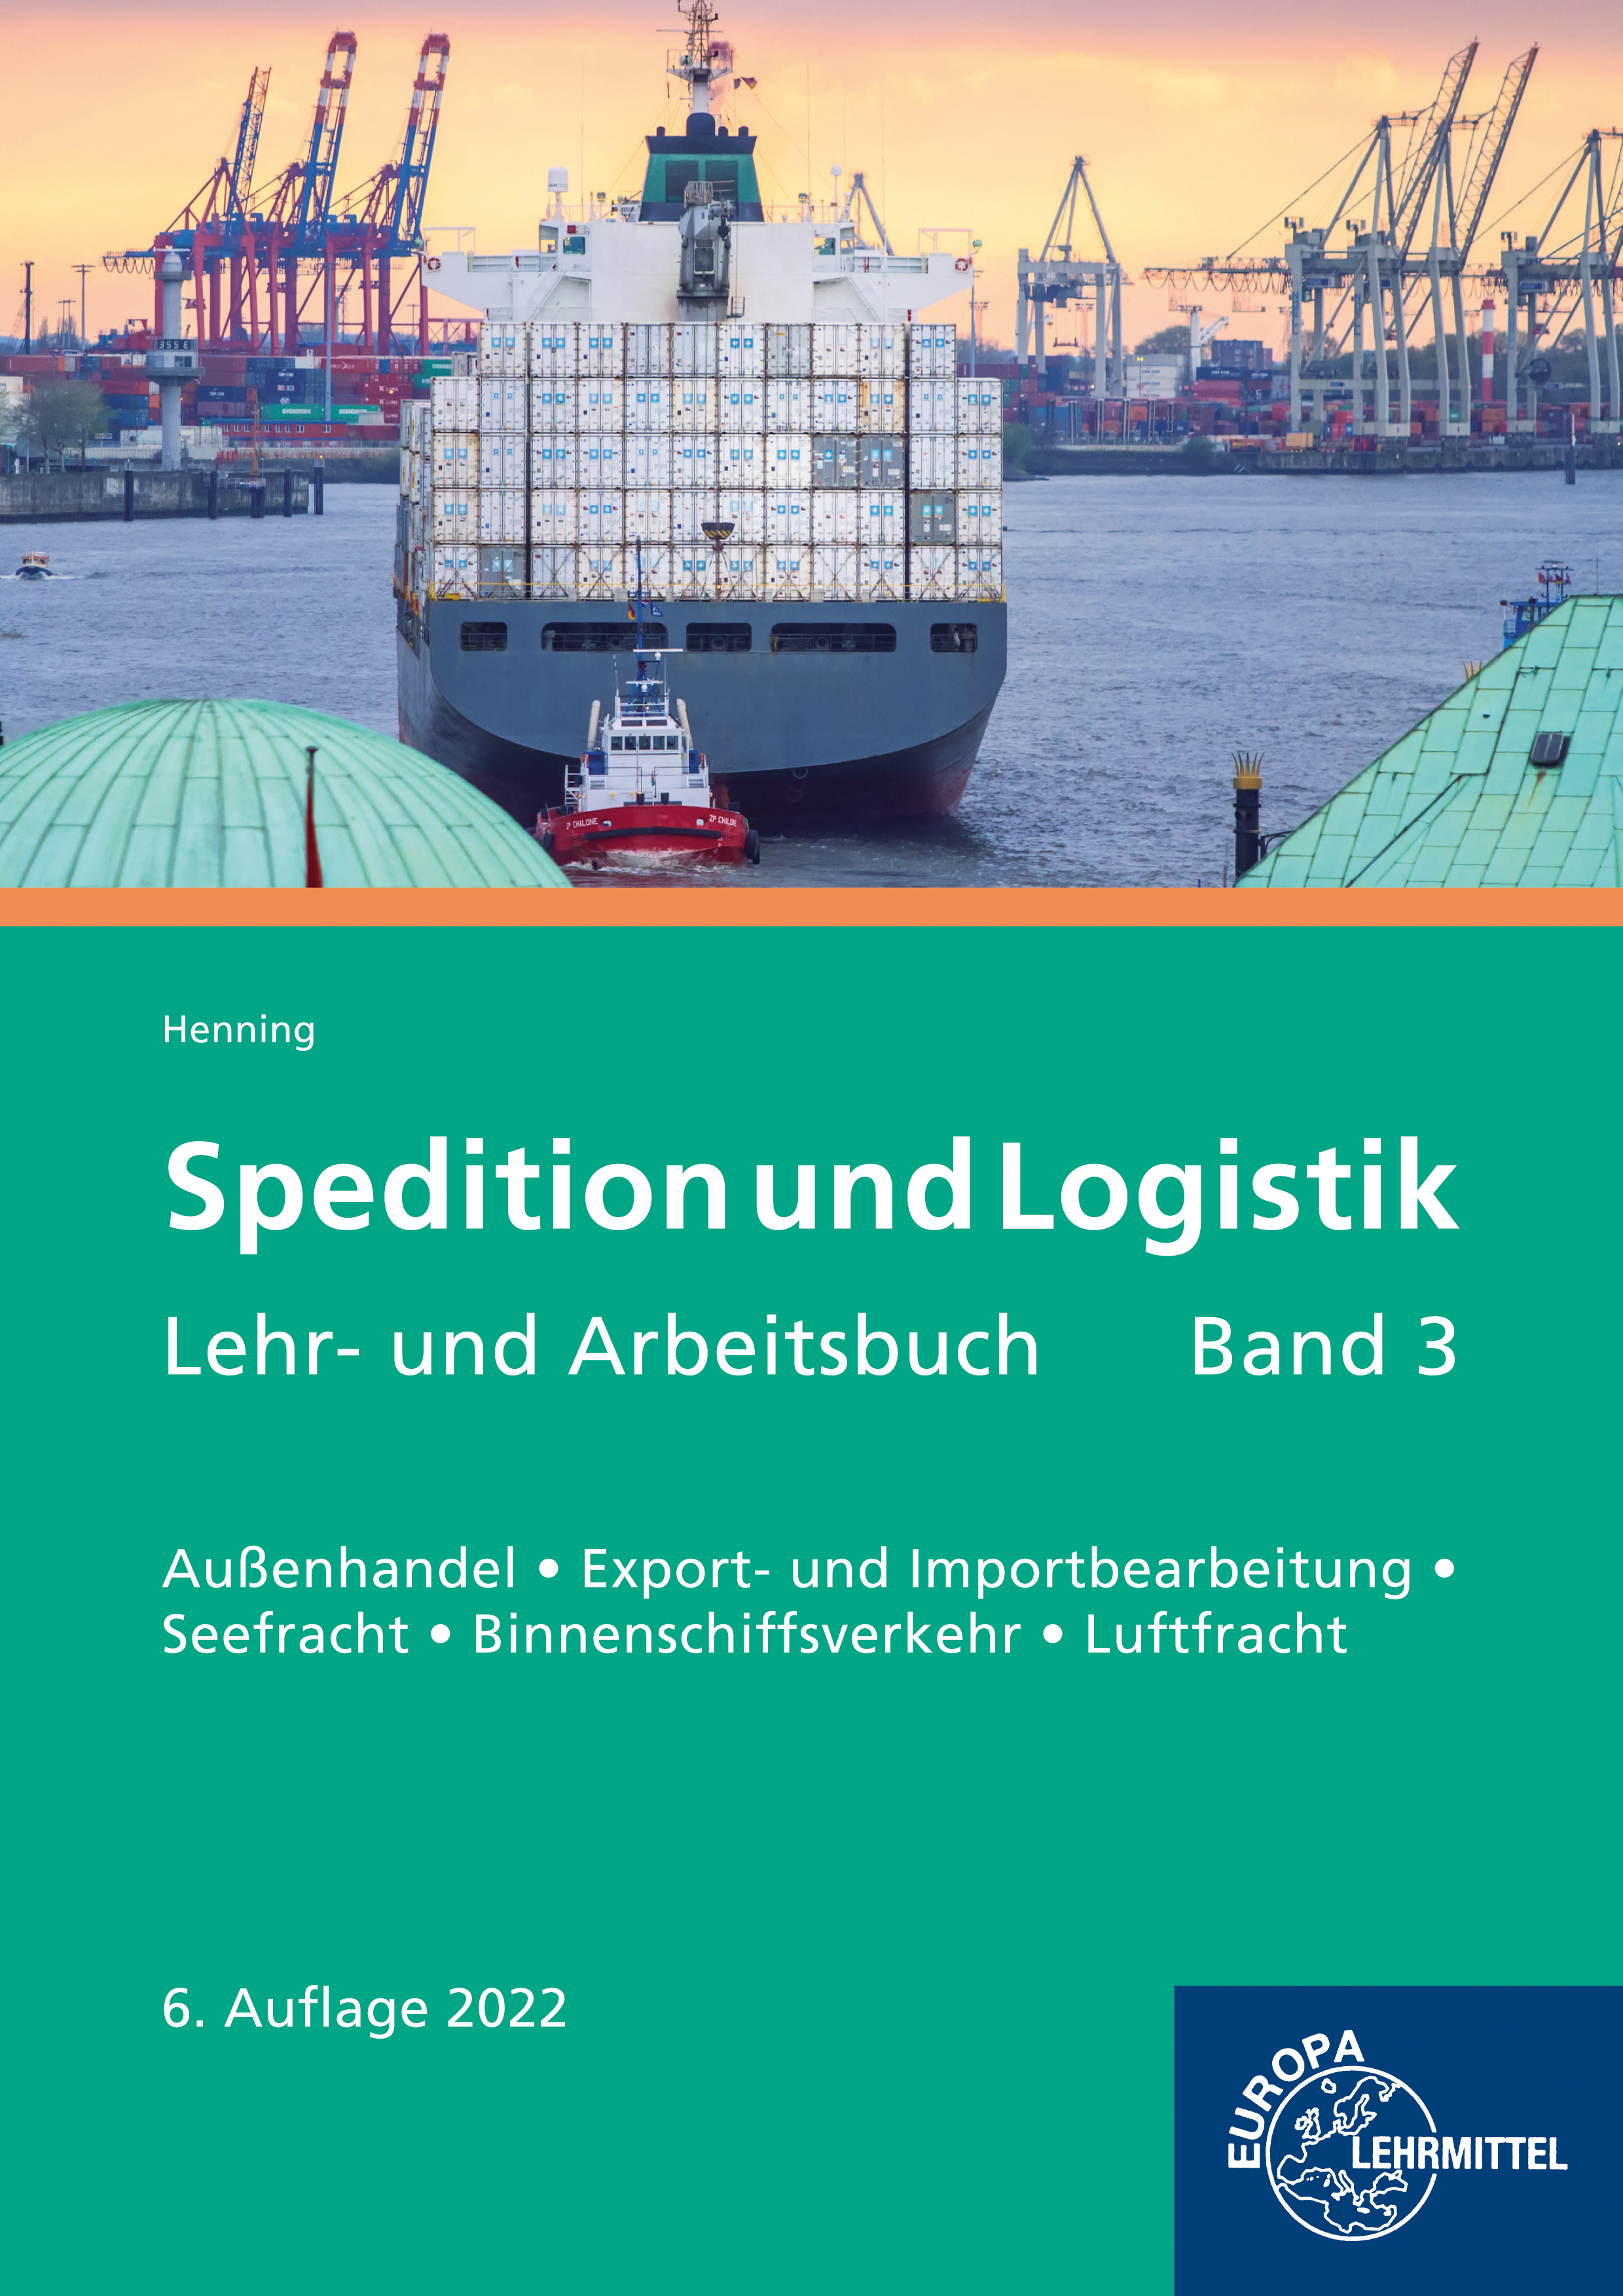 Spedition und Logistik, Lehr- und Arbeitsbuch Band 3